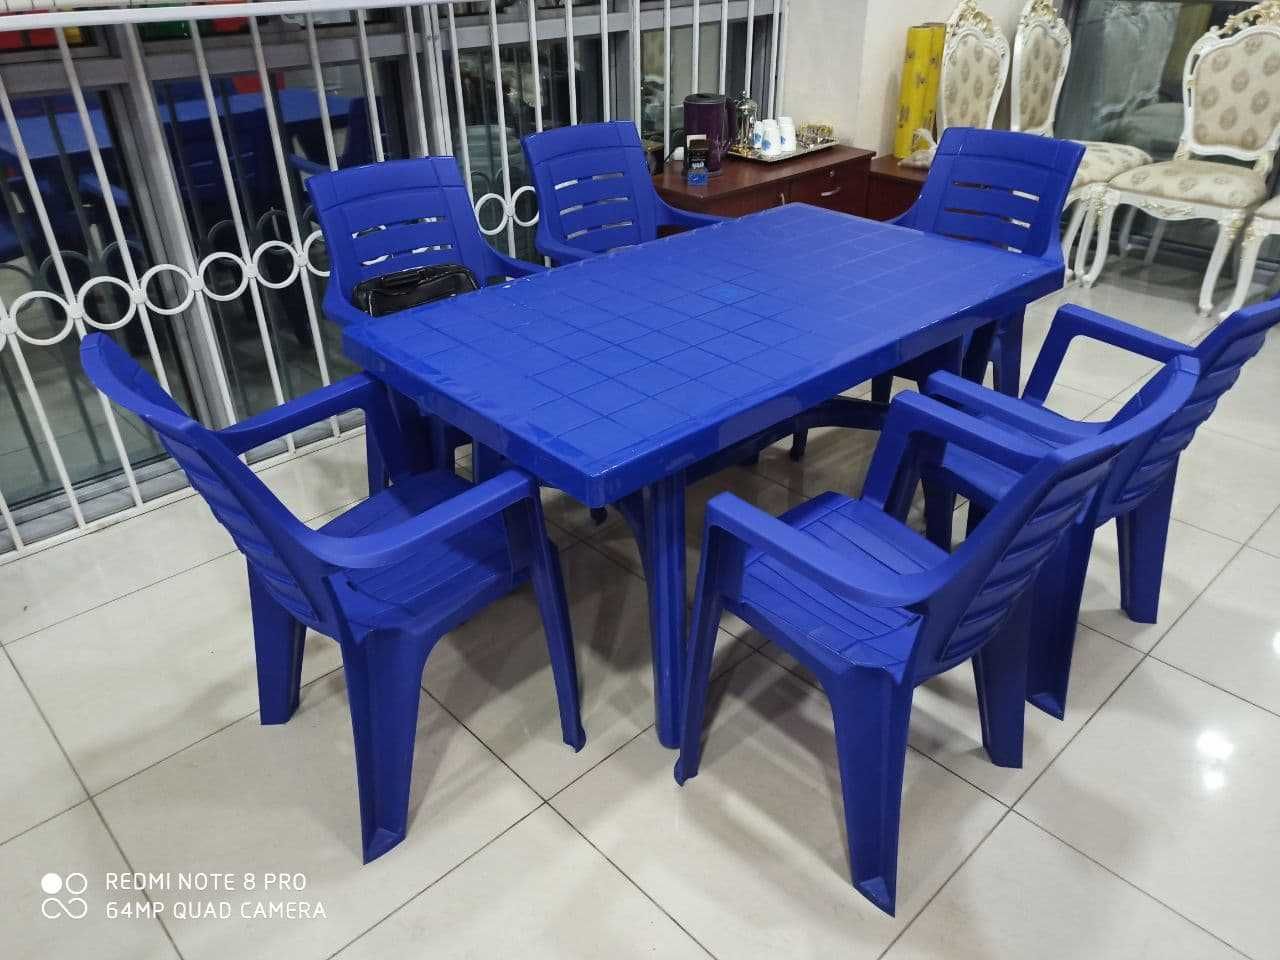 Качественные столы со стульями в разных цветах